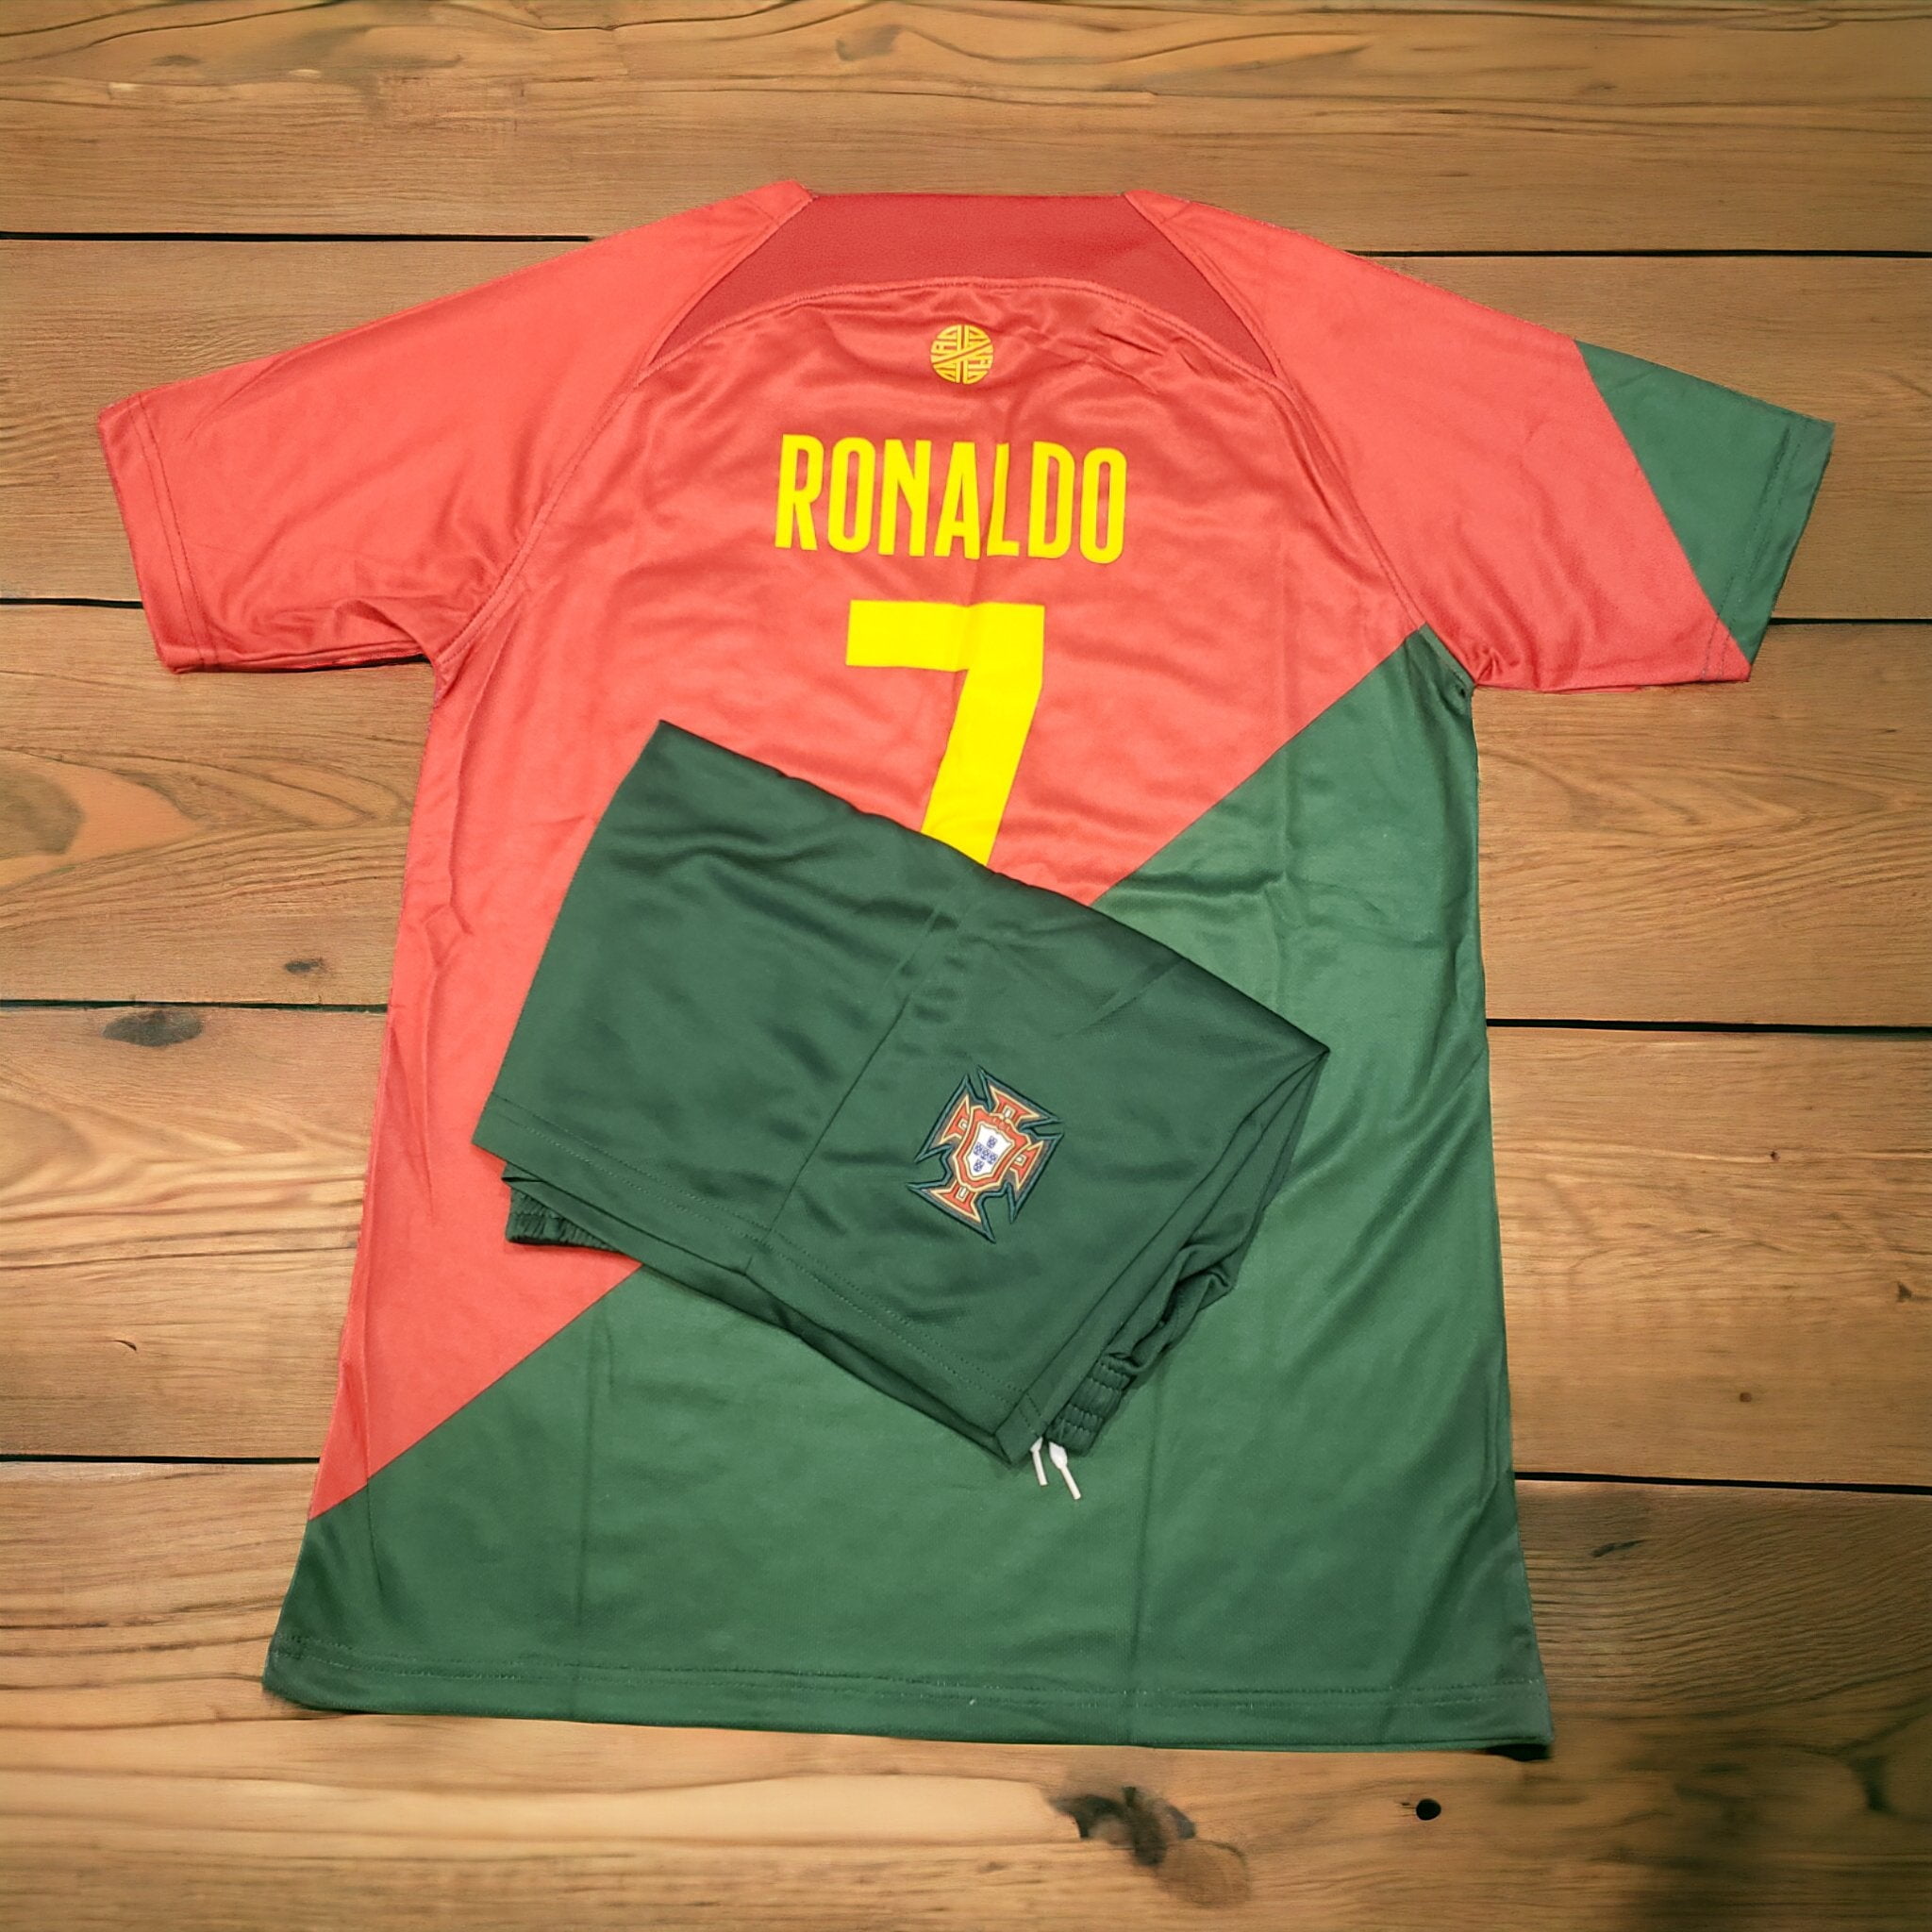 ronaldo 7 portugal shirt